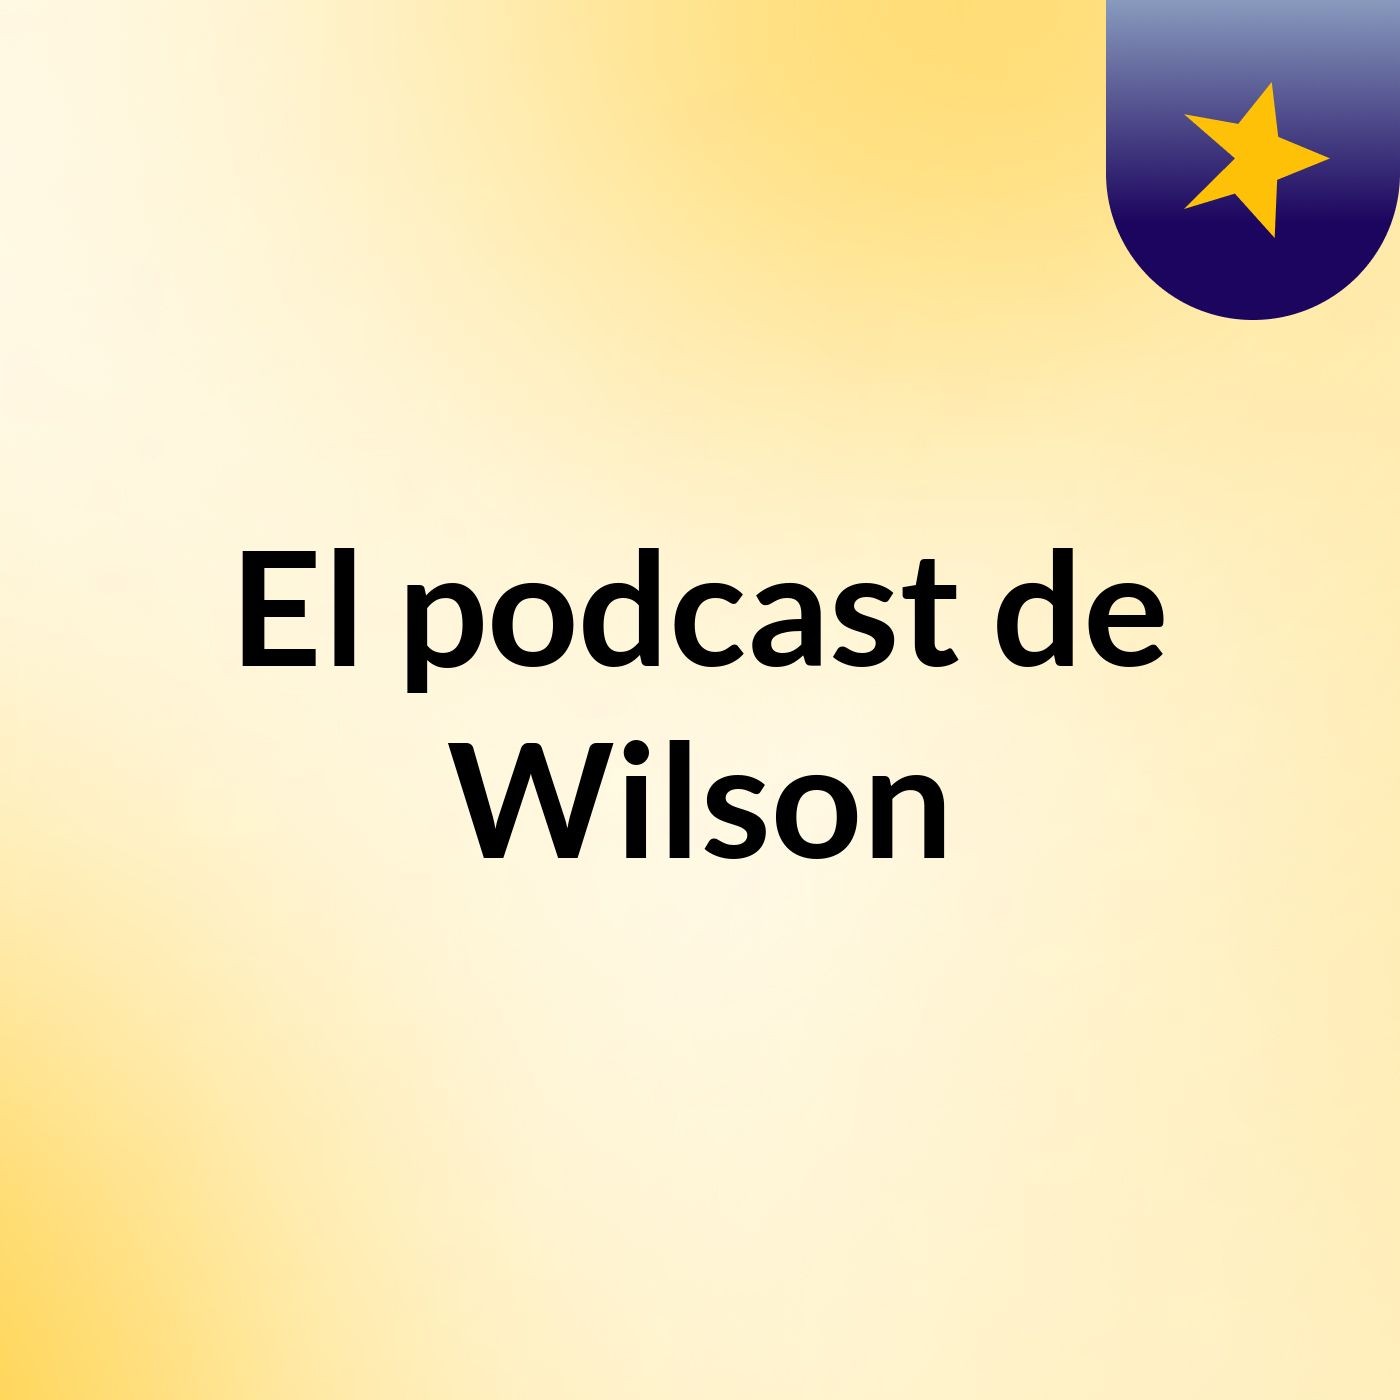 Episodio 4 - El podcast de Wilson